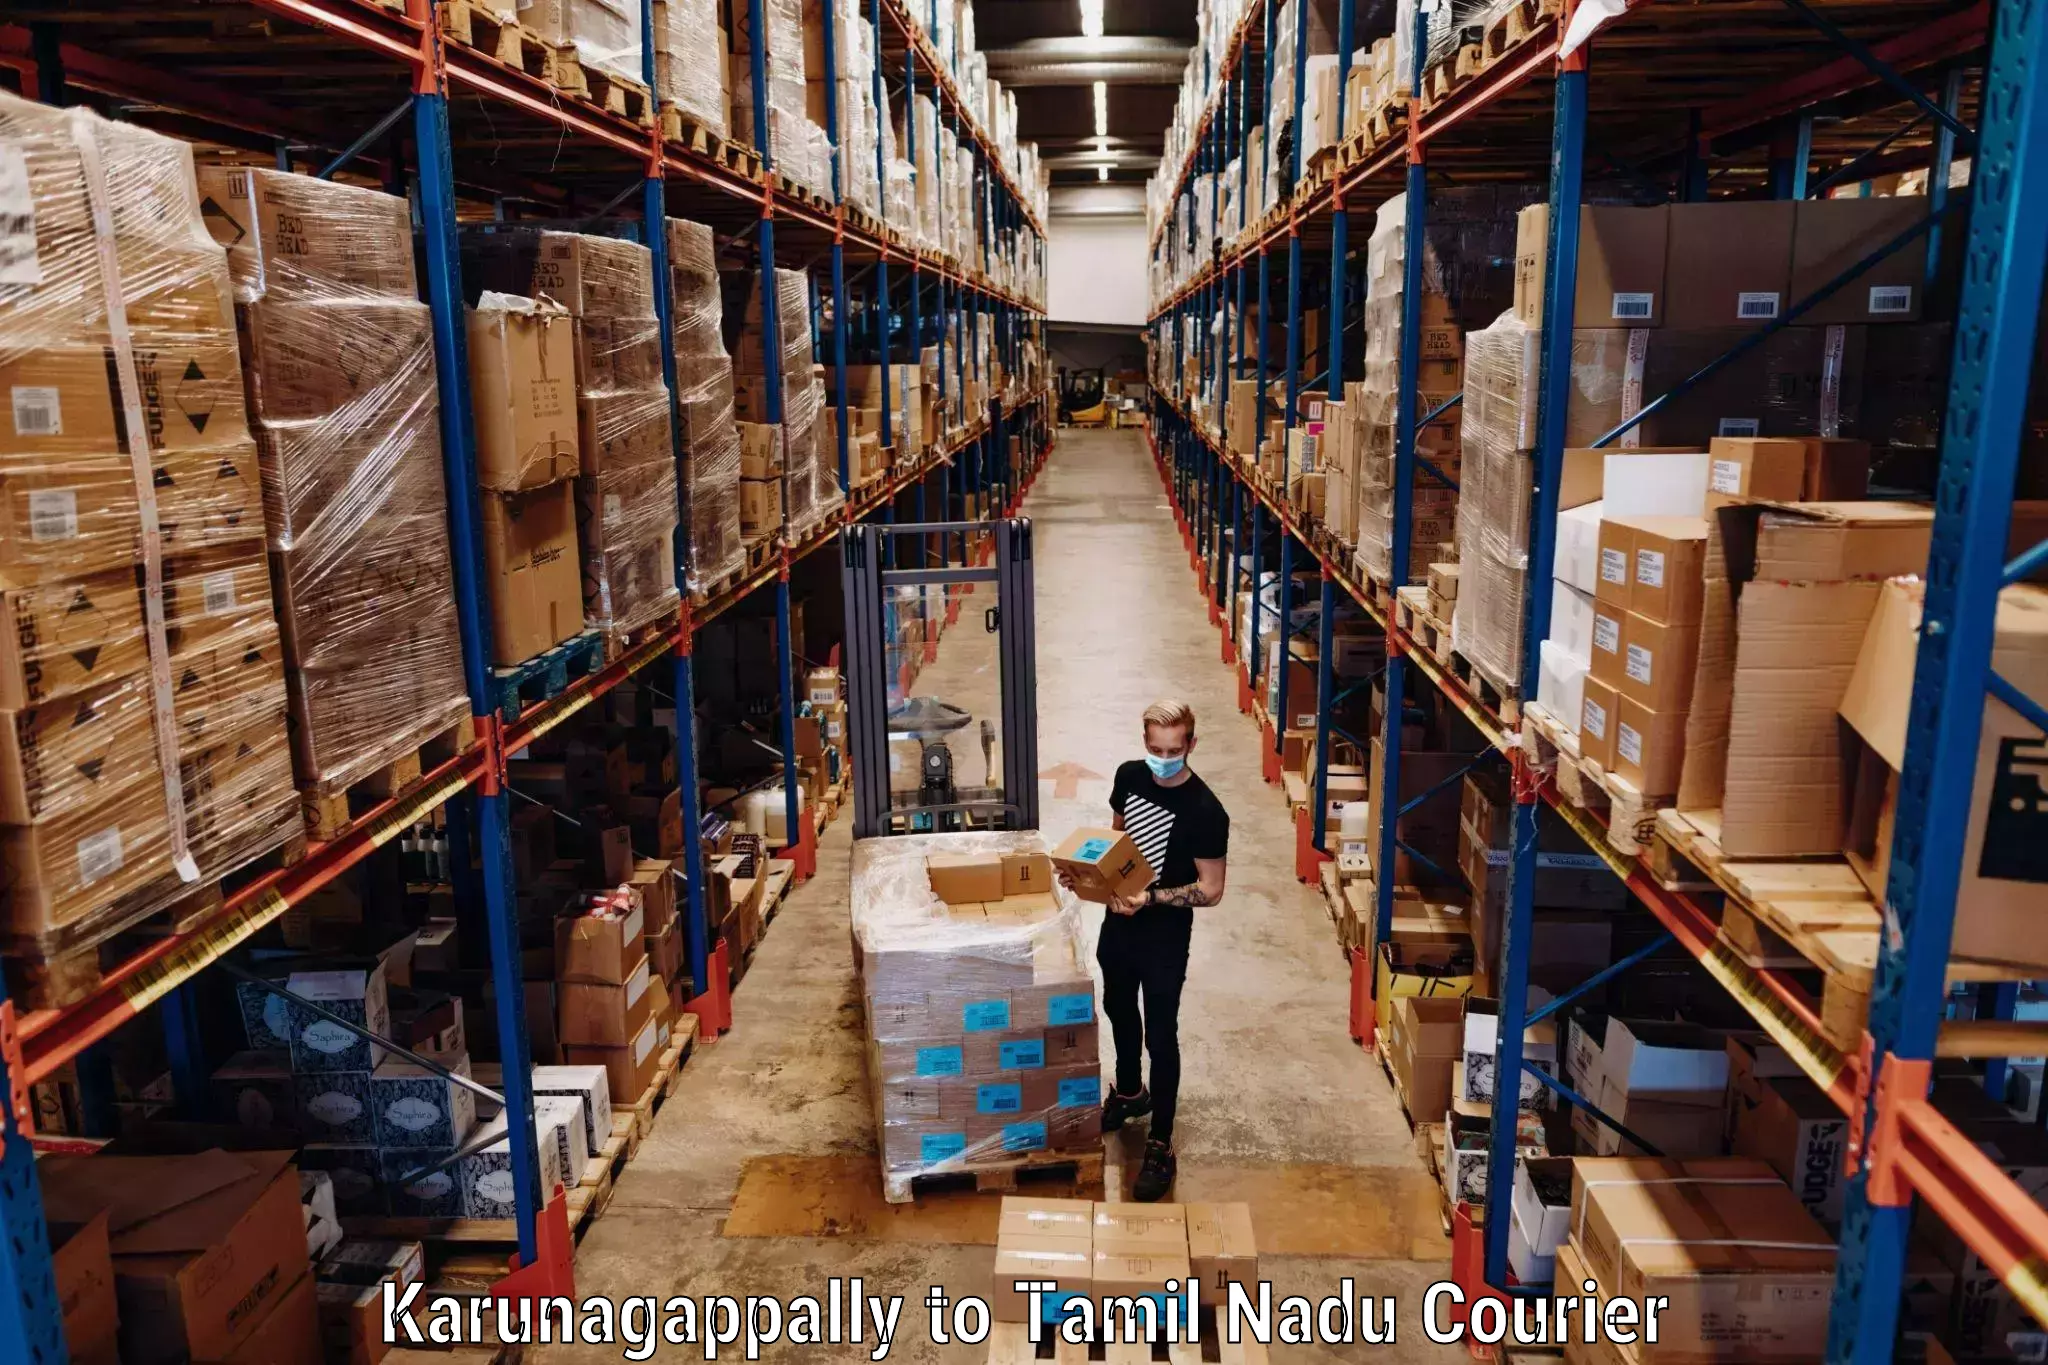 Baggage shipping experts Karunagappally to Chinnasalem